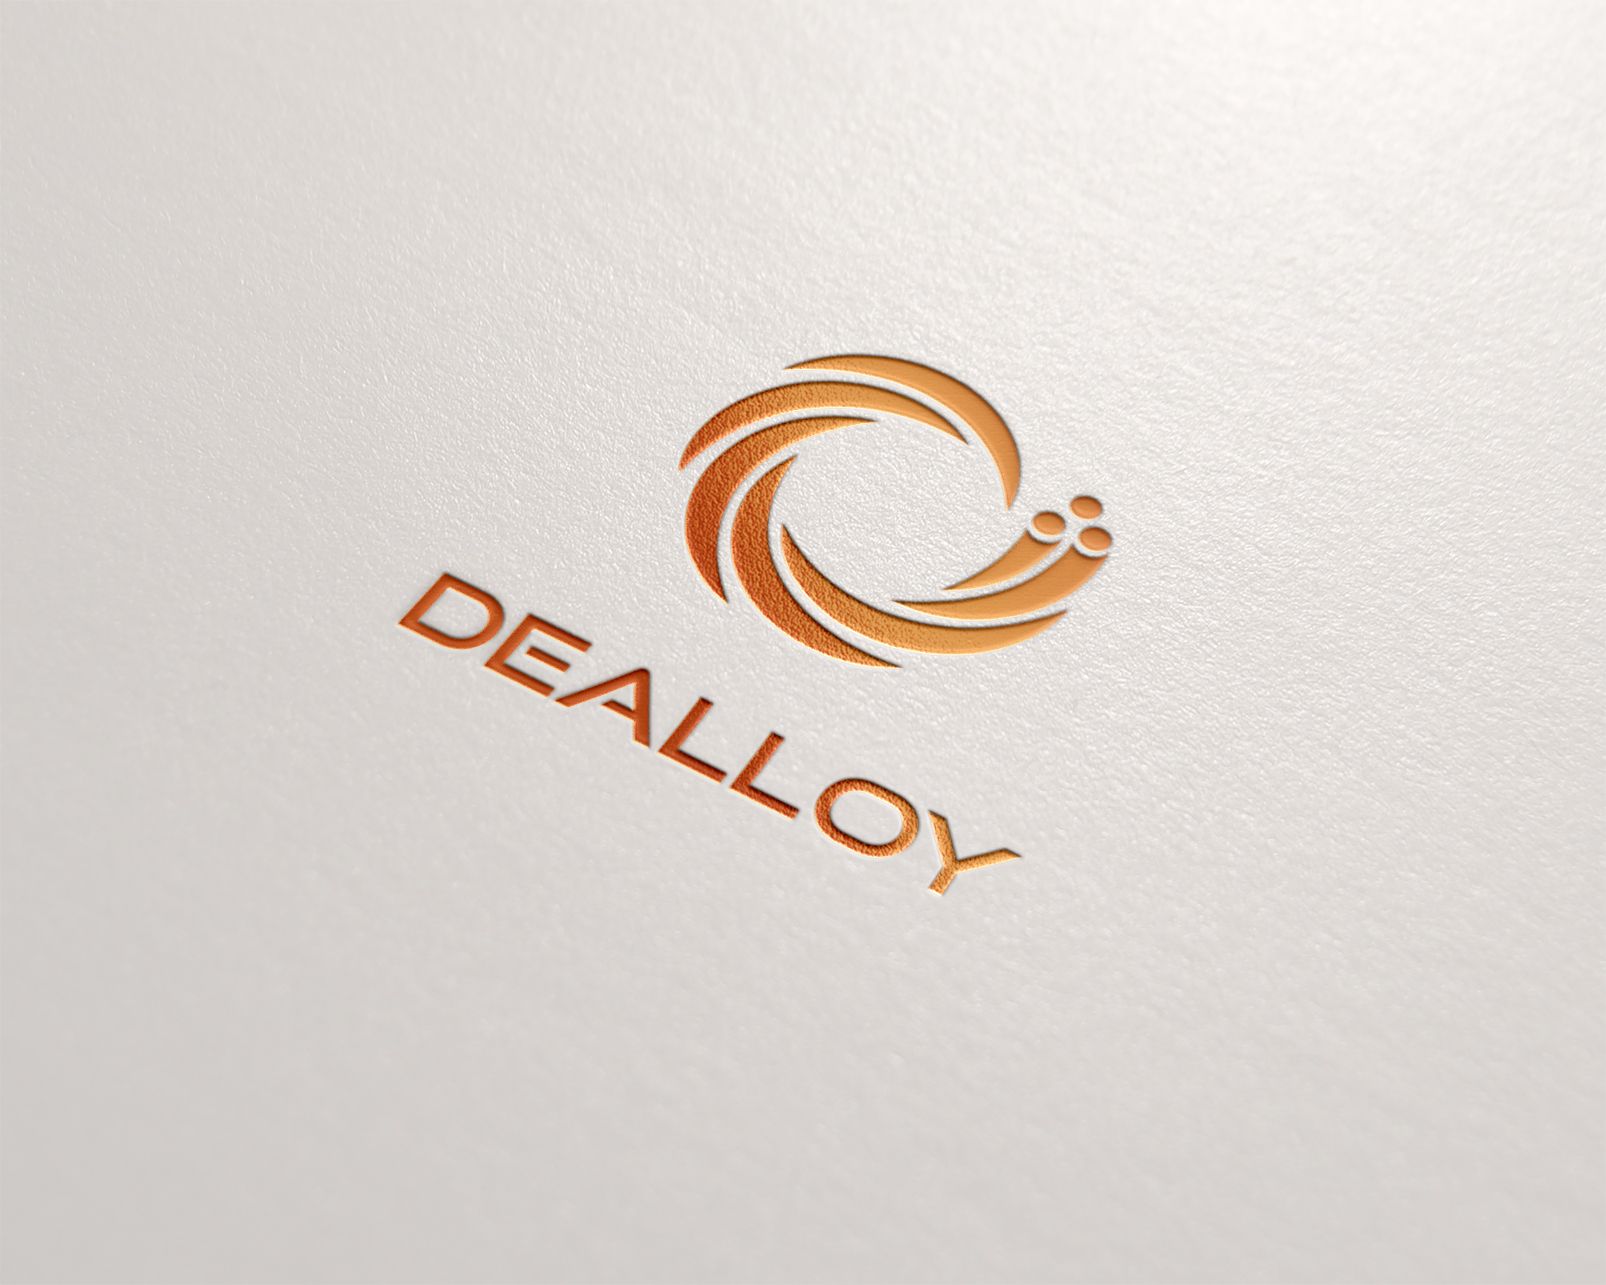 Логотип DeAlloy - дизайнер dron55